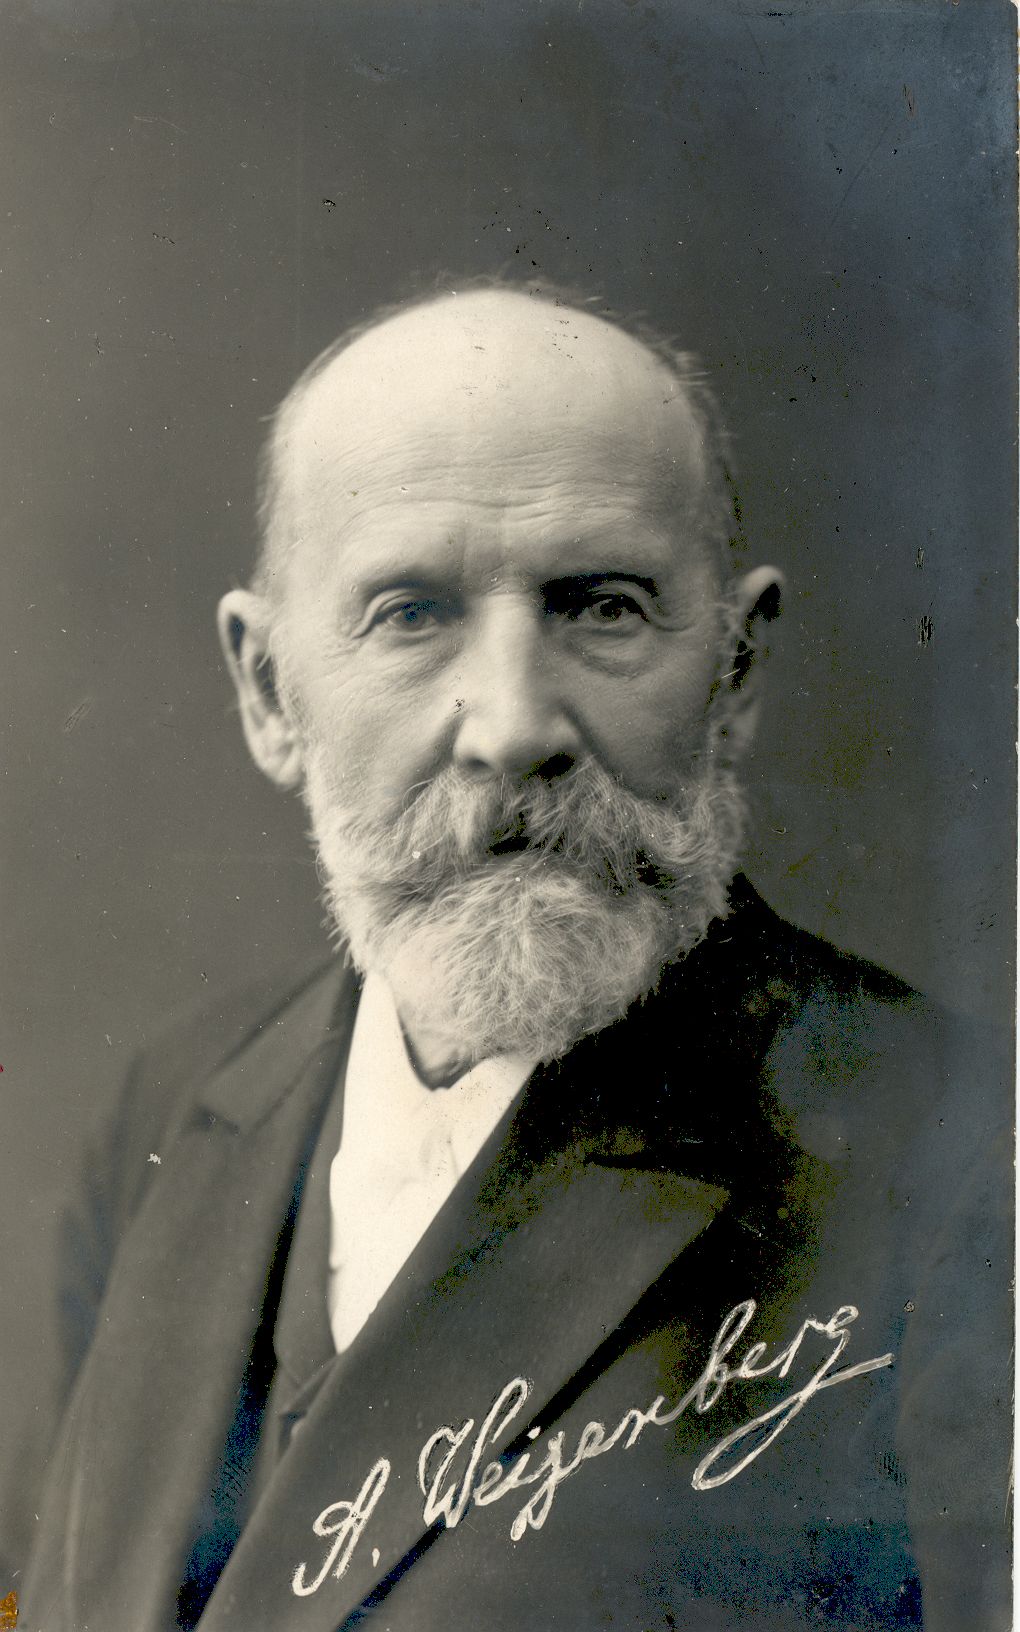 August Weizenberg (1837-1921), sculptor